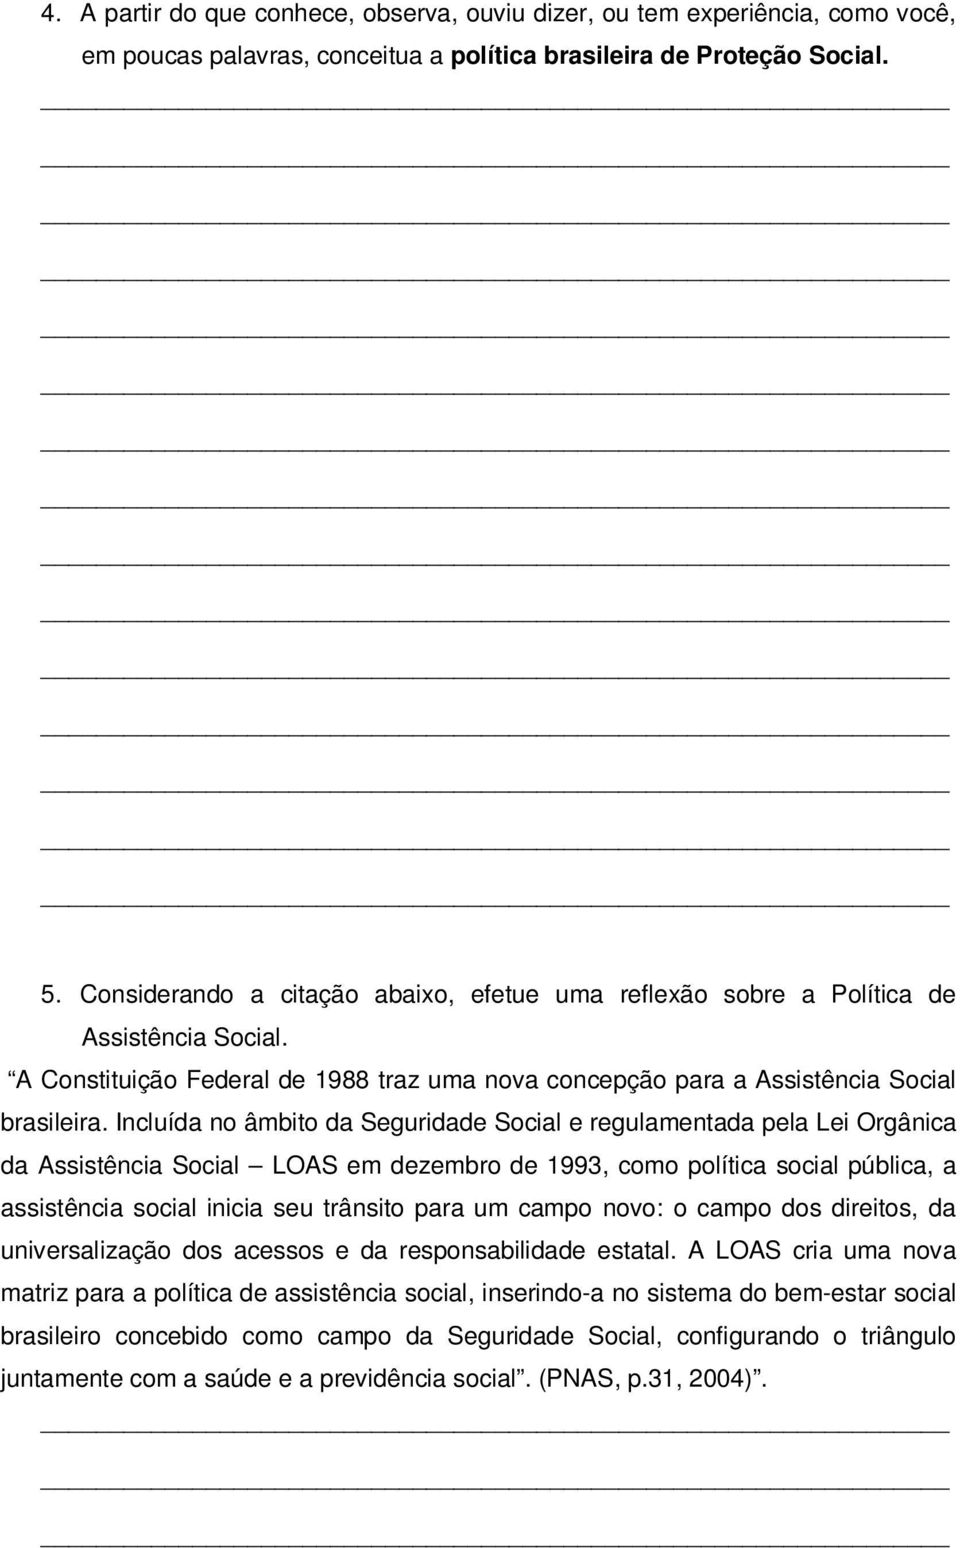 Incluída no âmbito da Seguridade Social e regulamentada pela Lei Orgânica da Assistência Social LOAS em dezembro de 1993, como política social pública, a assistência social inicia seu trânsito para